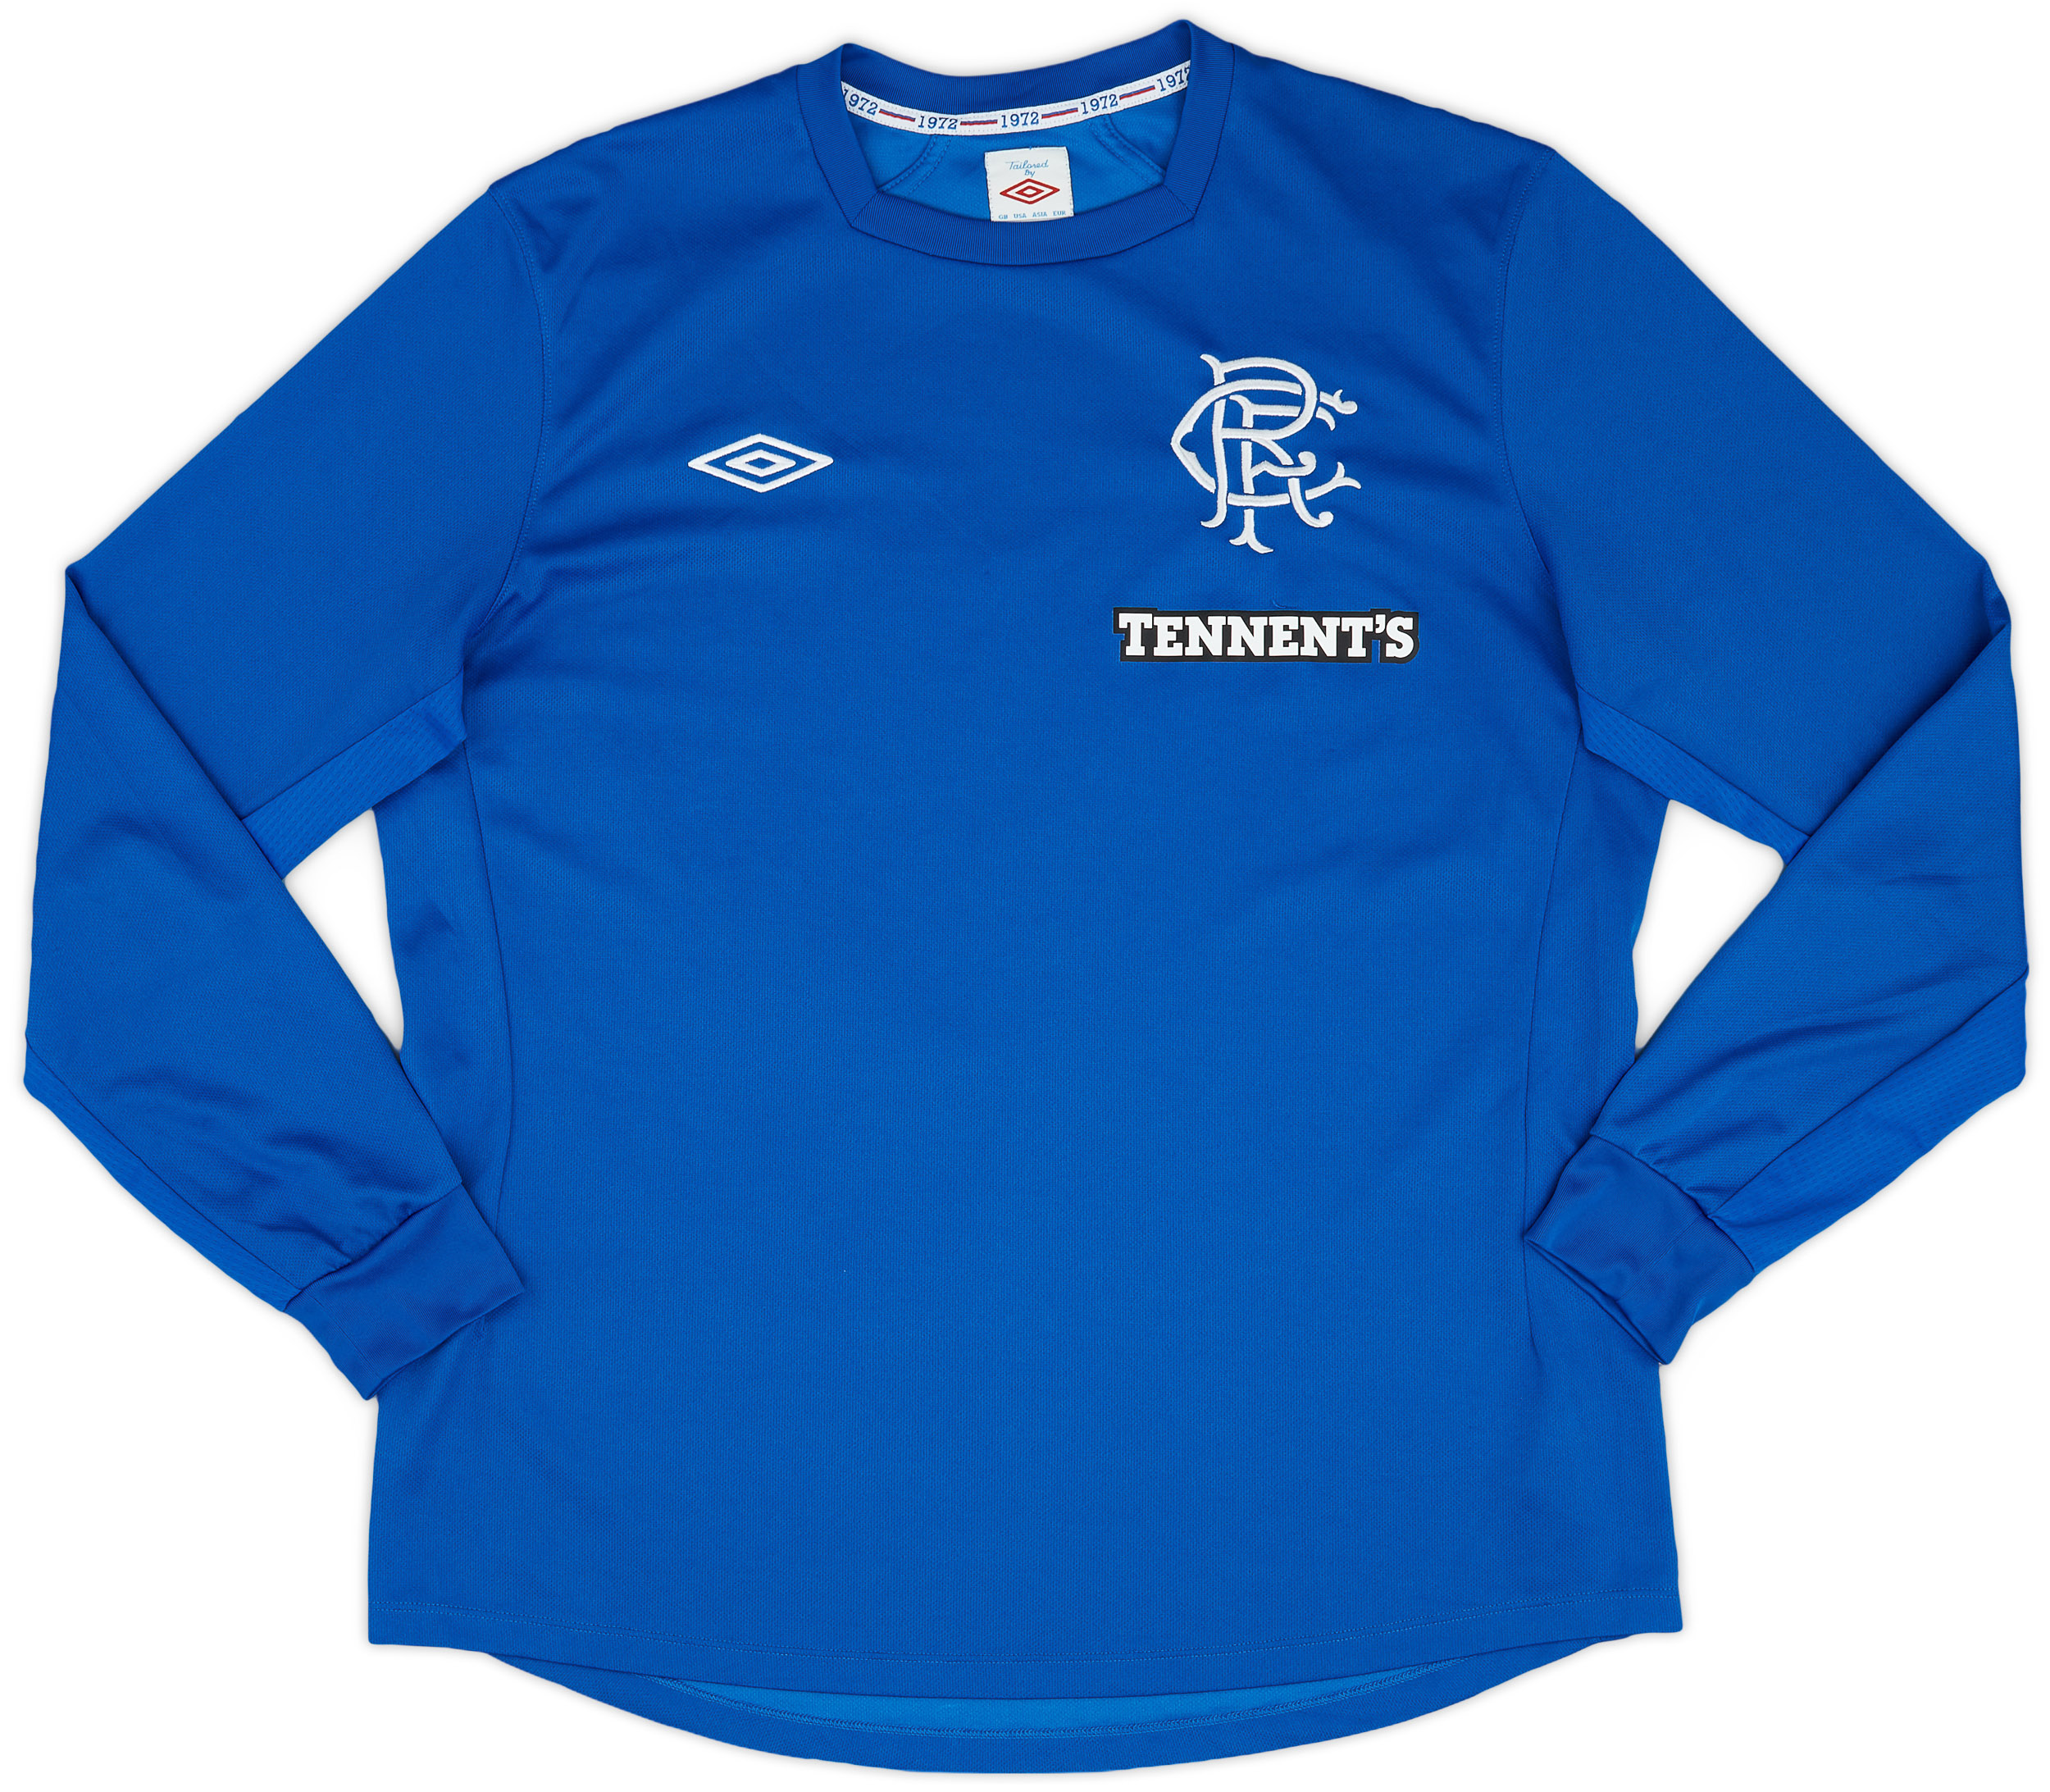 2012-13 Rangers Home Shirt - 9/10 - ()